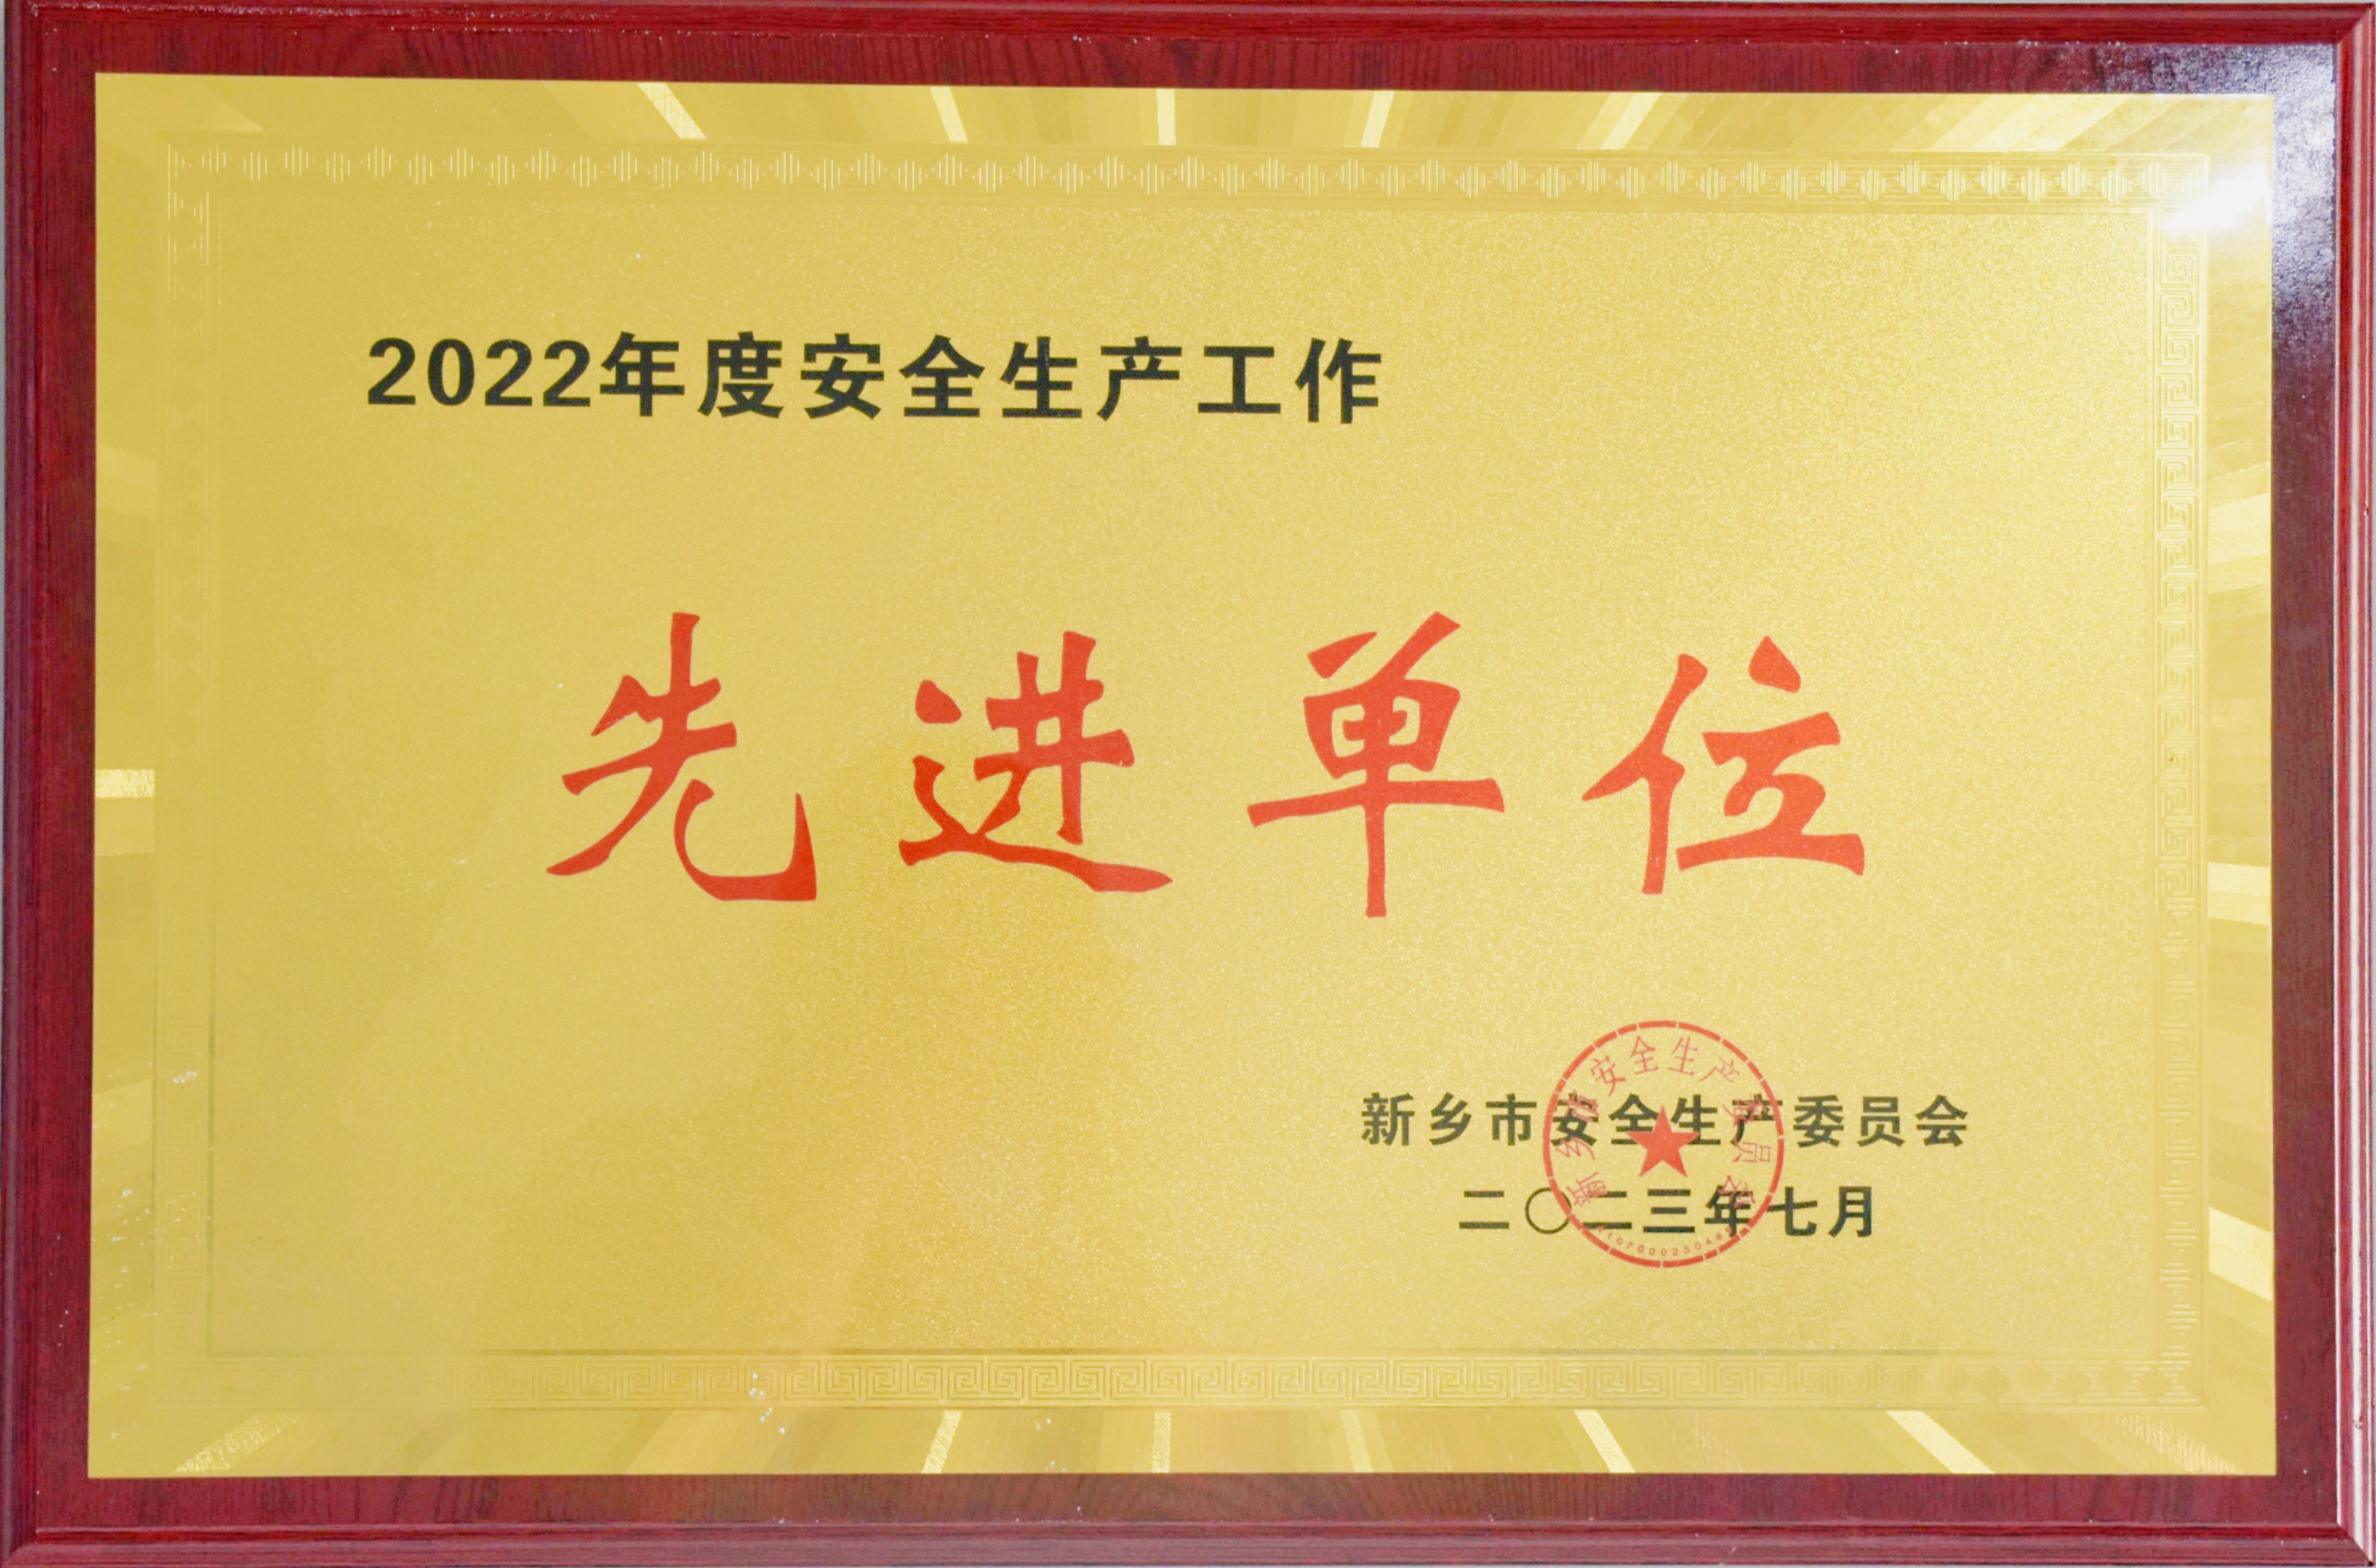 河南中鑫榮獲2022年度安全生產工作先進單位榮譽稱號